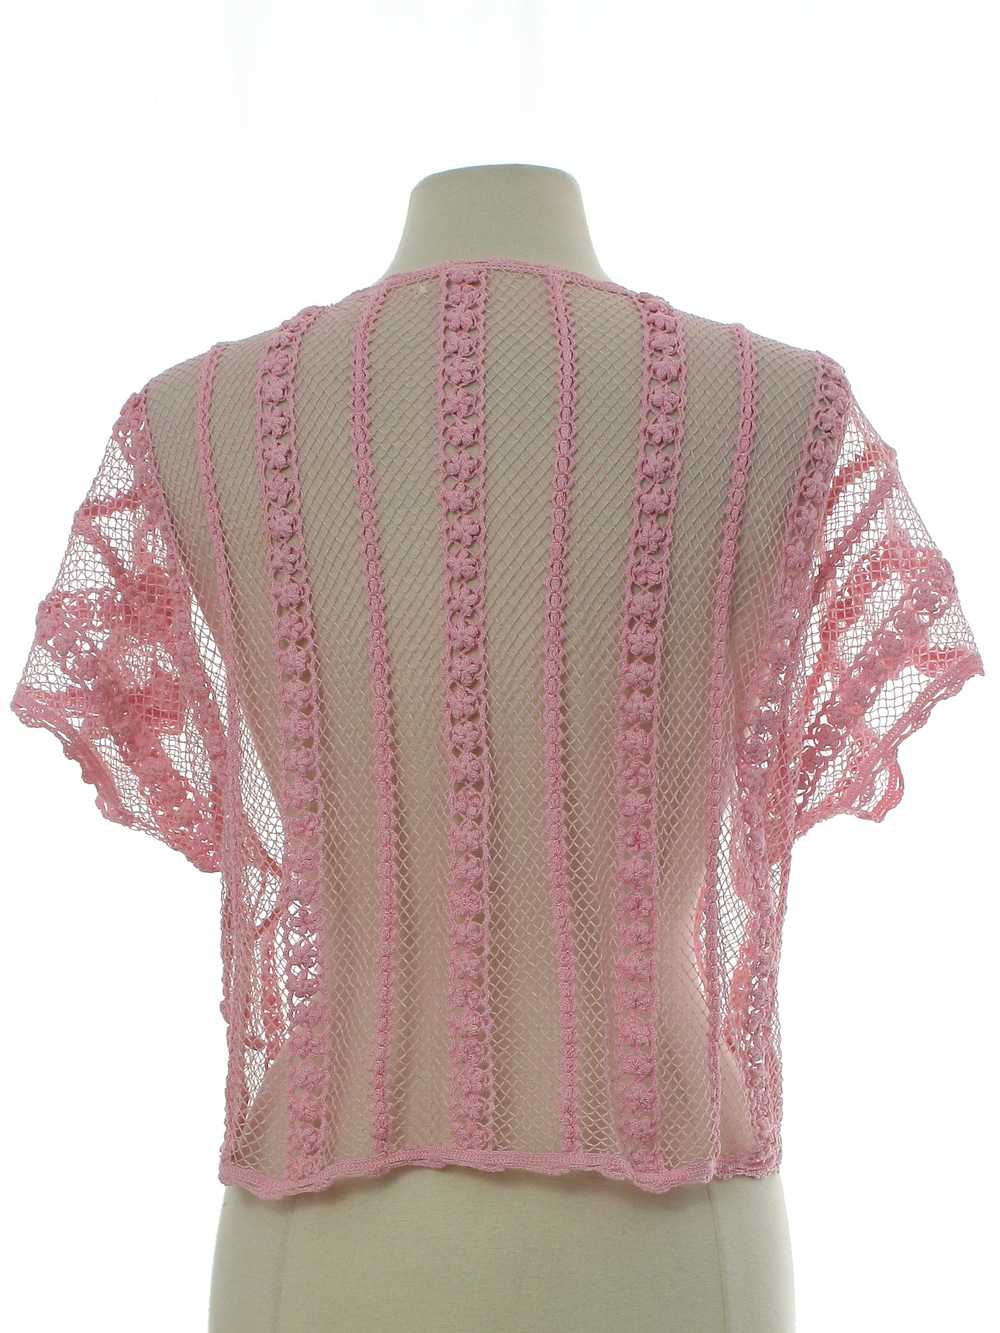 1990's Womens Sheer Crocheted Shirt - image 3